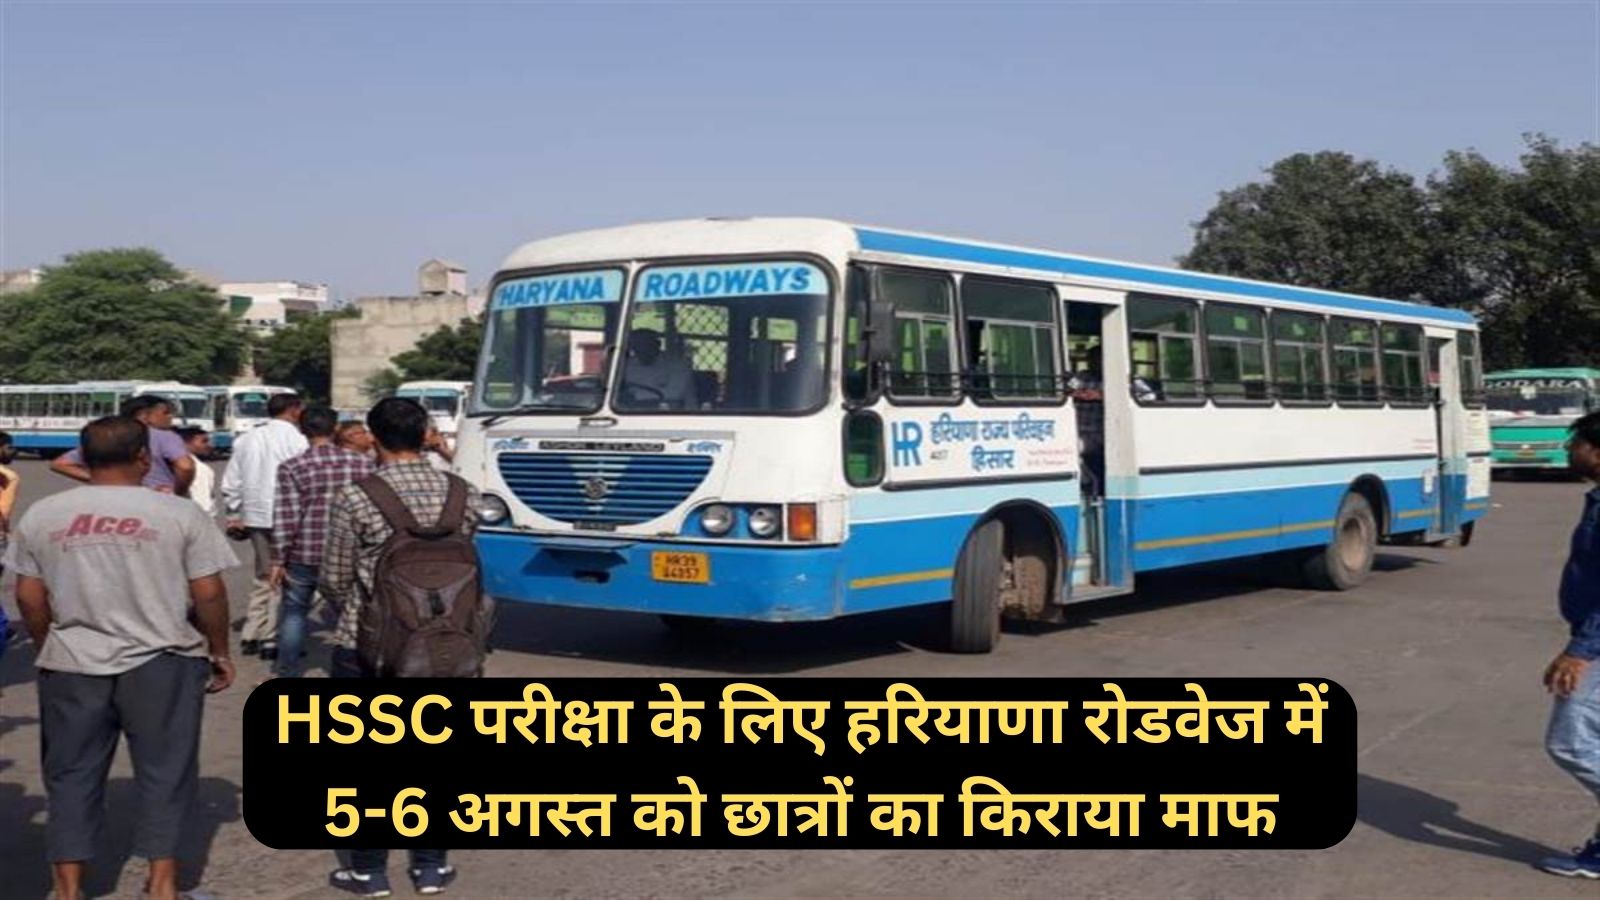 Haryana HSSC:हरियाणा सरकार ने छात्रों को दिया बड़ा तोहफा!HSSC परीक्षा के लिए हरियाणा रोडवेज में 5-6 अगस्त को छात्रों का किराया माफ